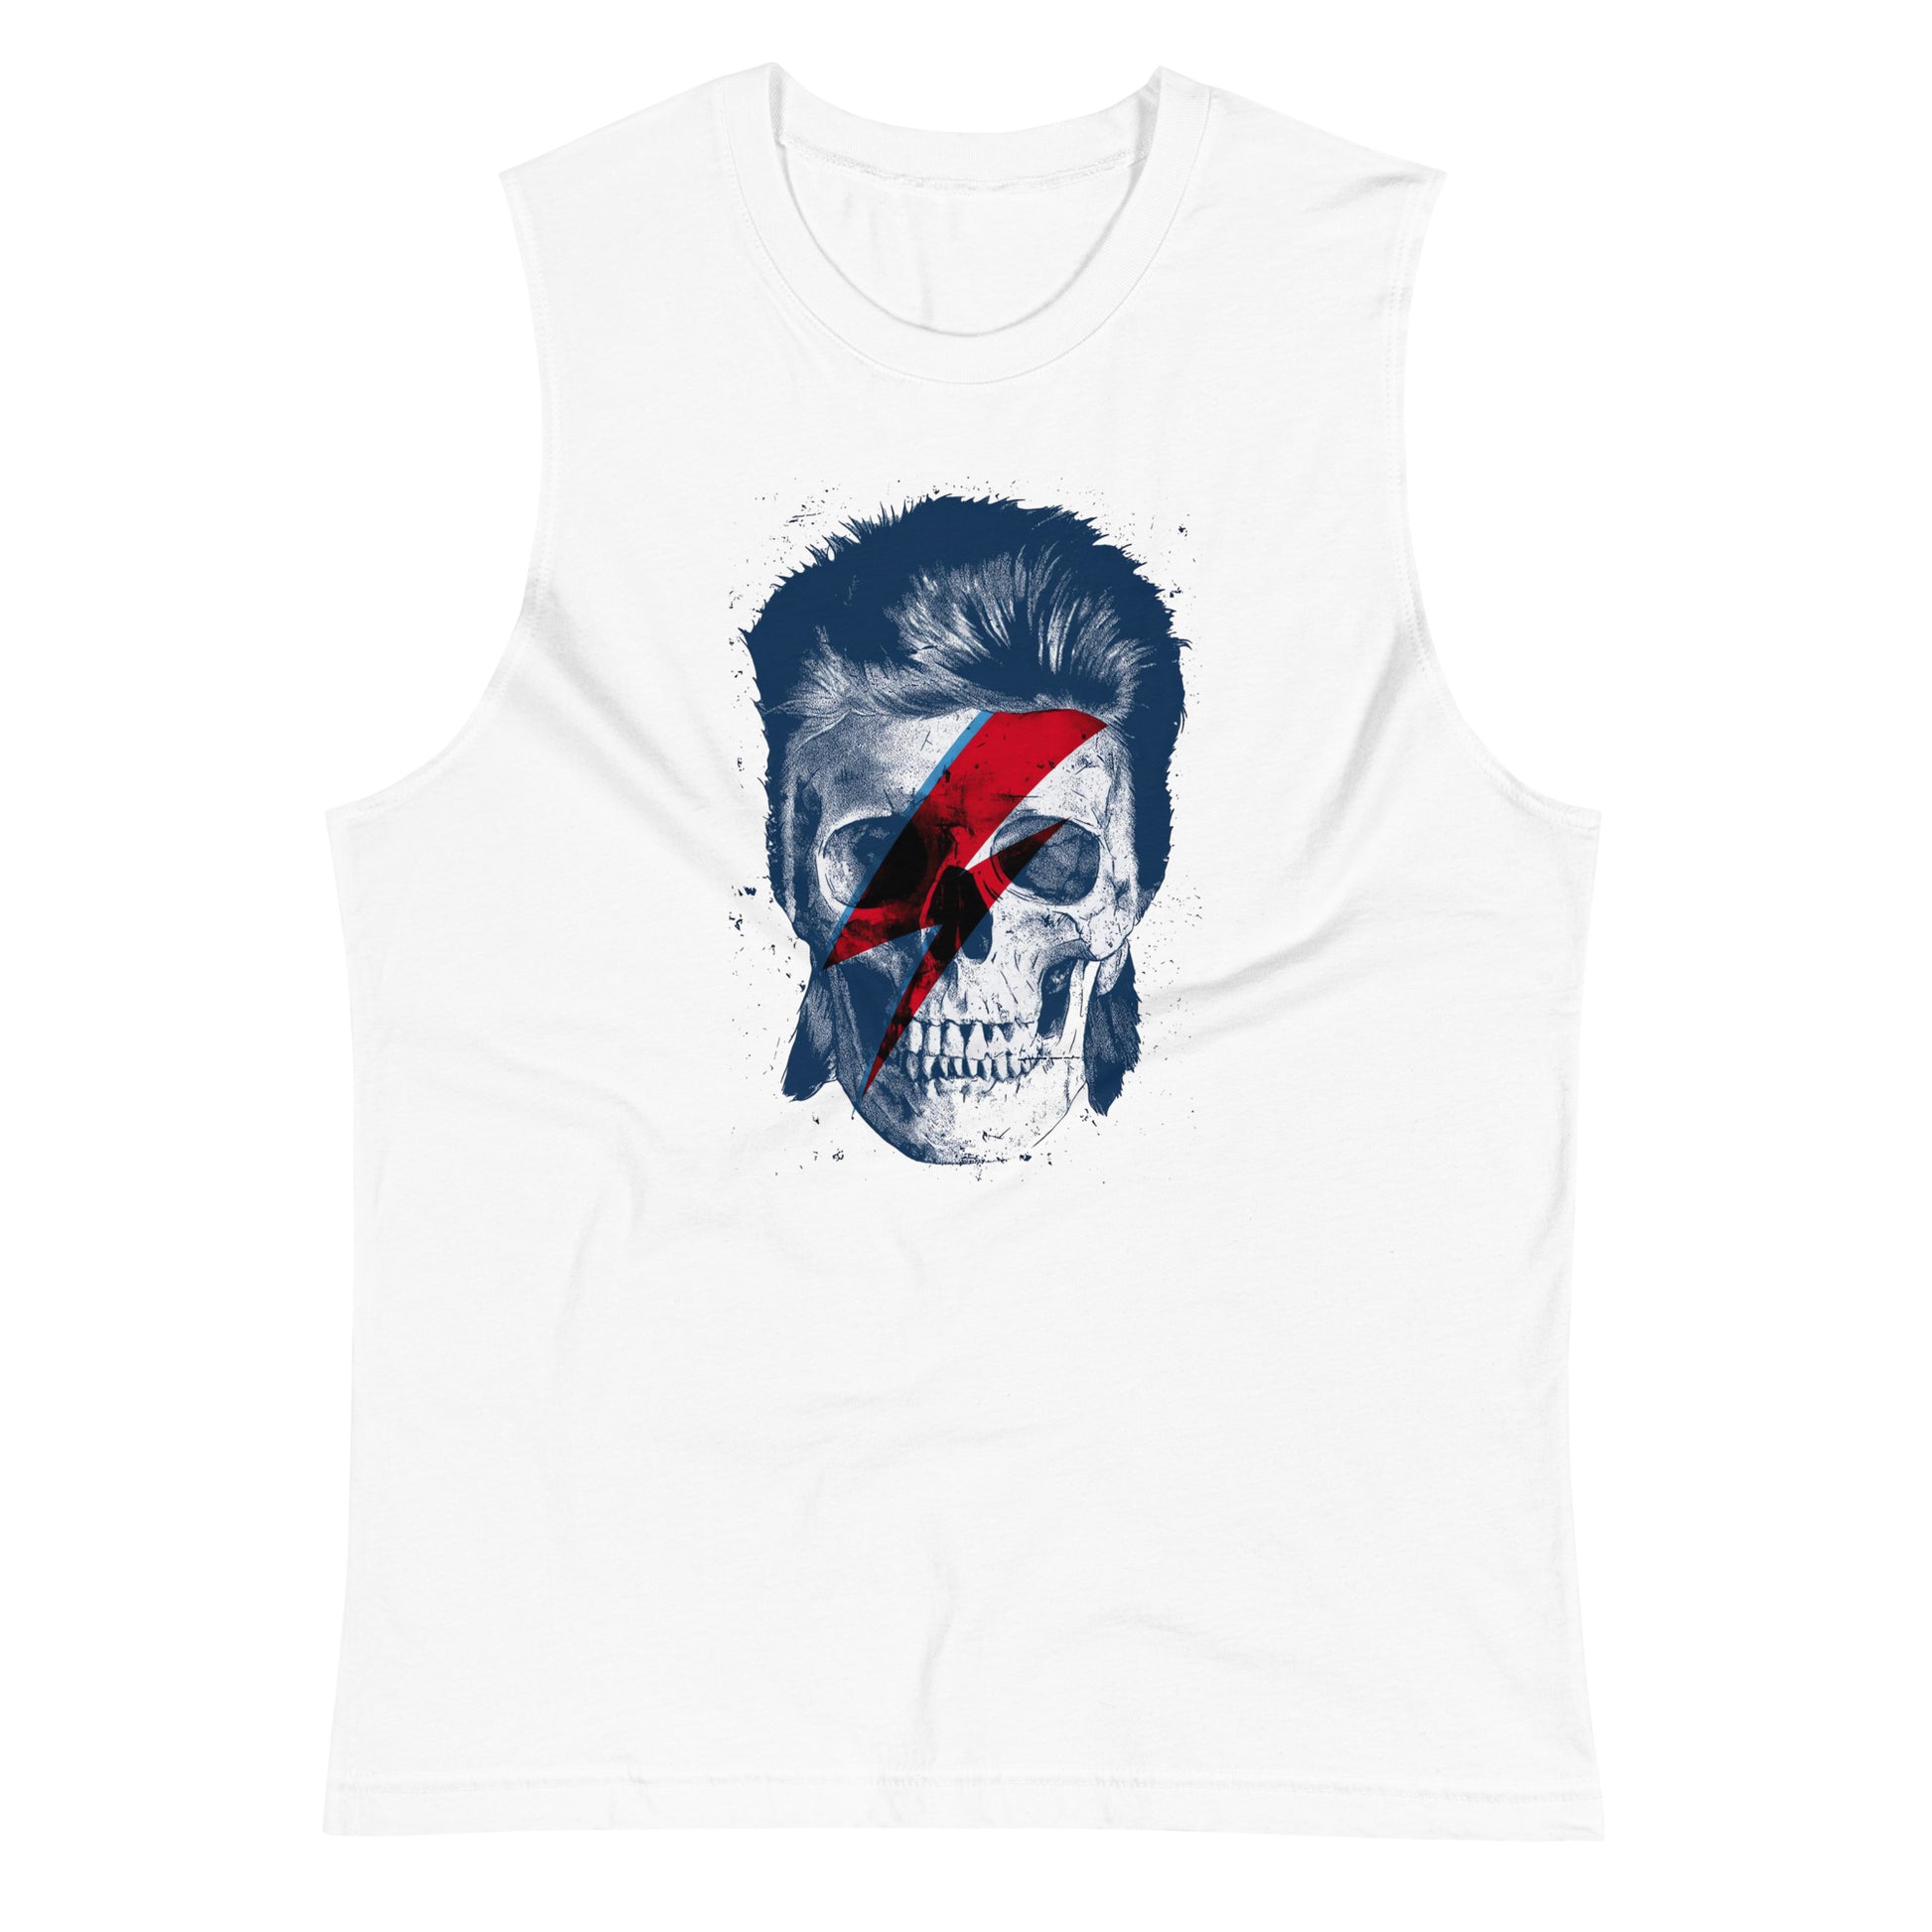 Camiseta sin Mangas David Bowie Skeleton, Nuestras Camisetas son unisex disponibles en la mejor tienda online, con envíos a todo el país, compra ahora